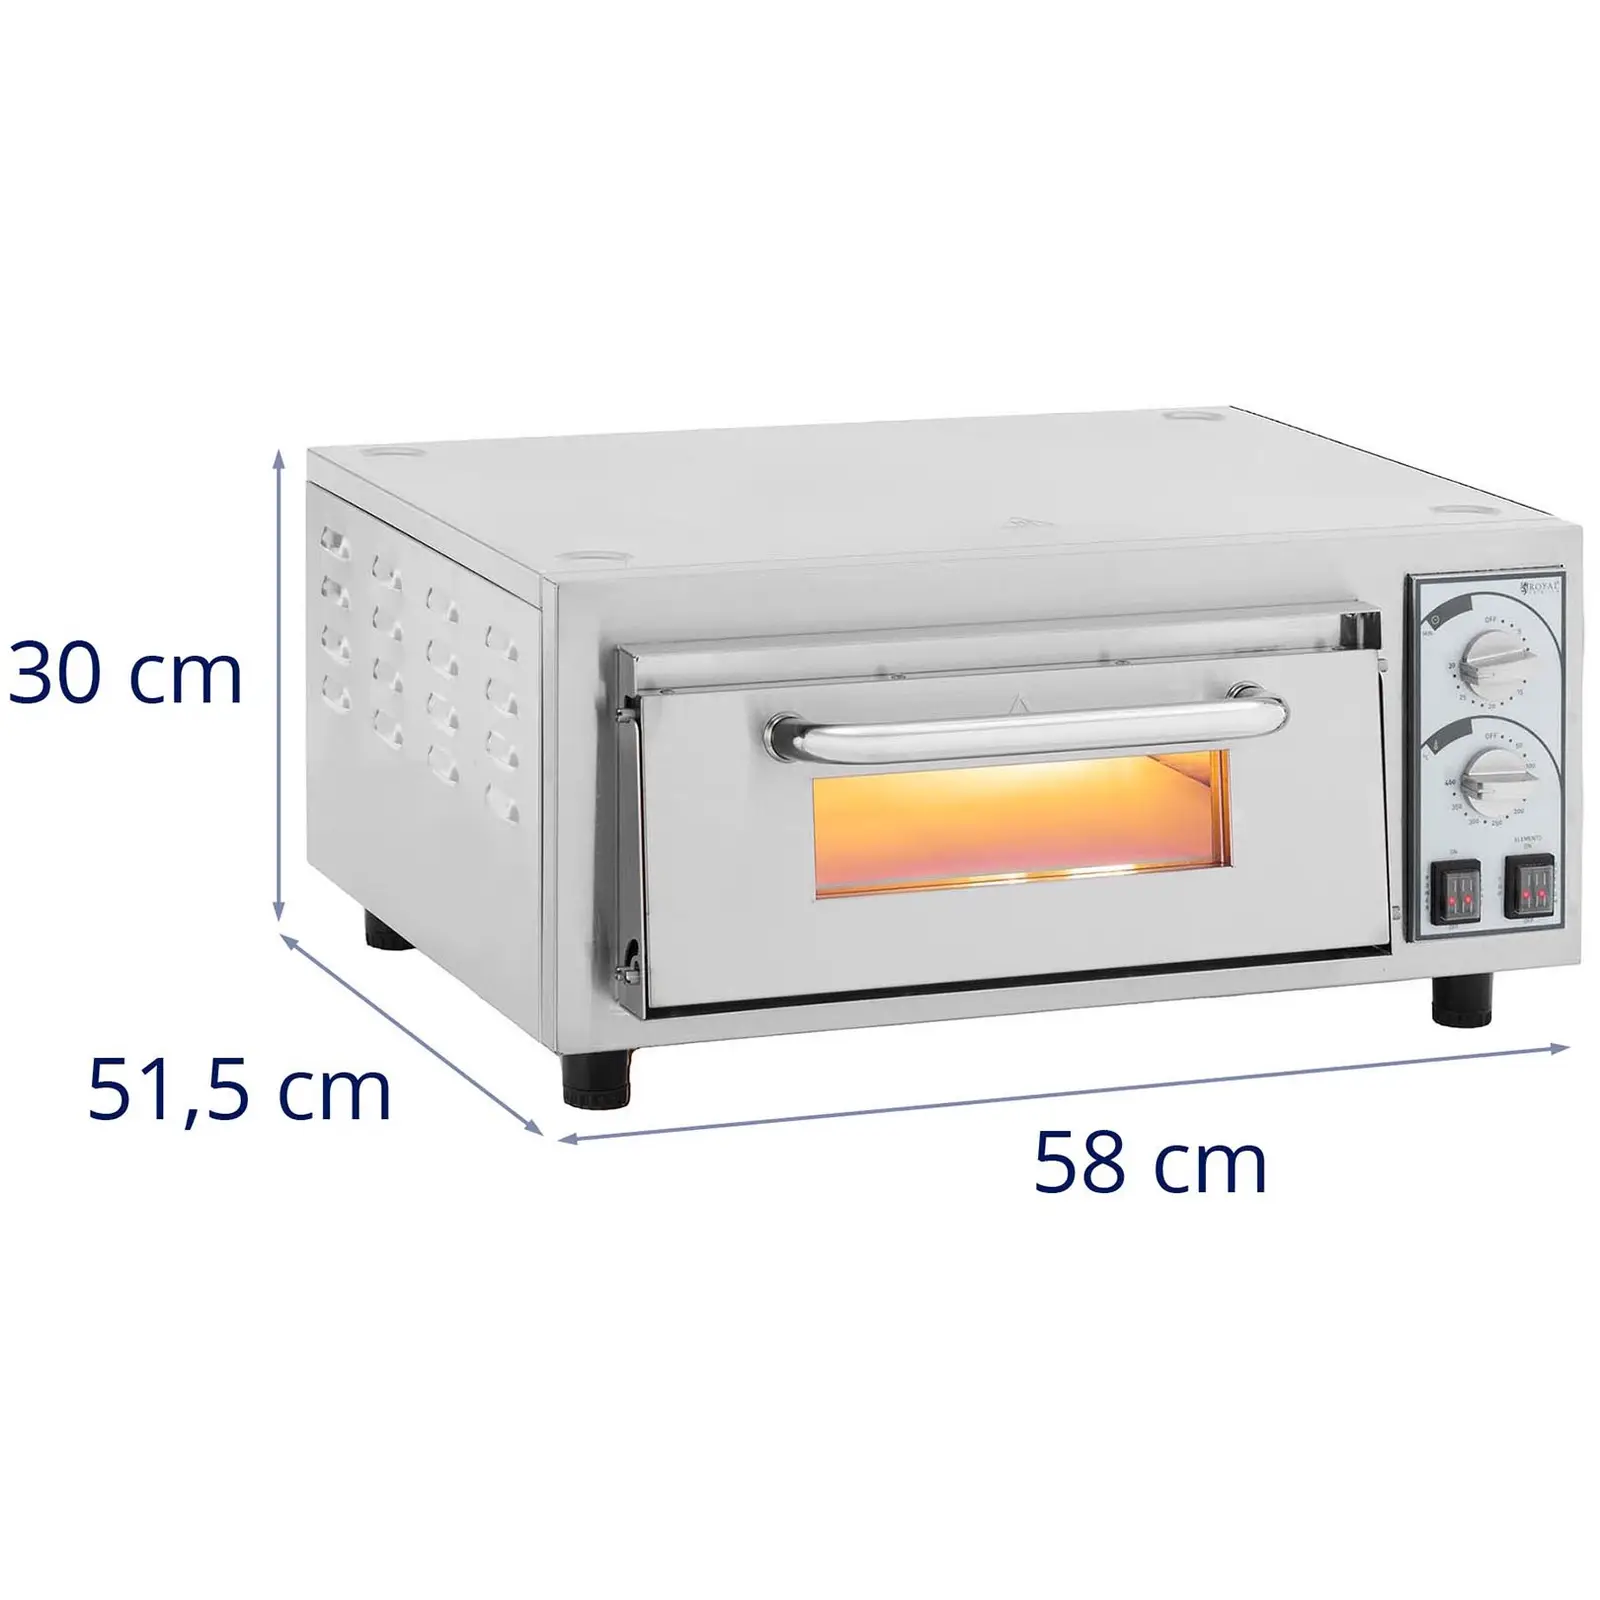 Forno para pizzas - 1 compartimento - 2200 W - Ø35 cm - pedra refractária - Royal Catering